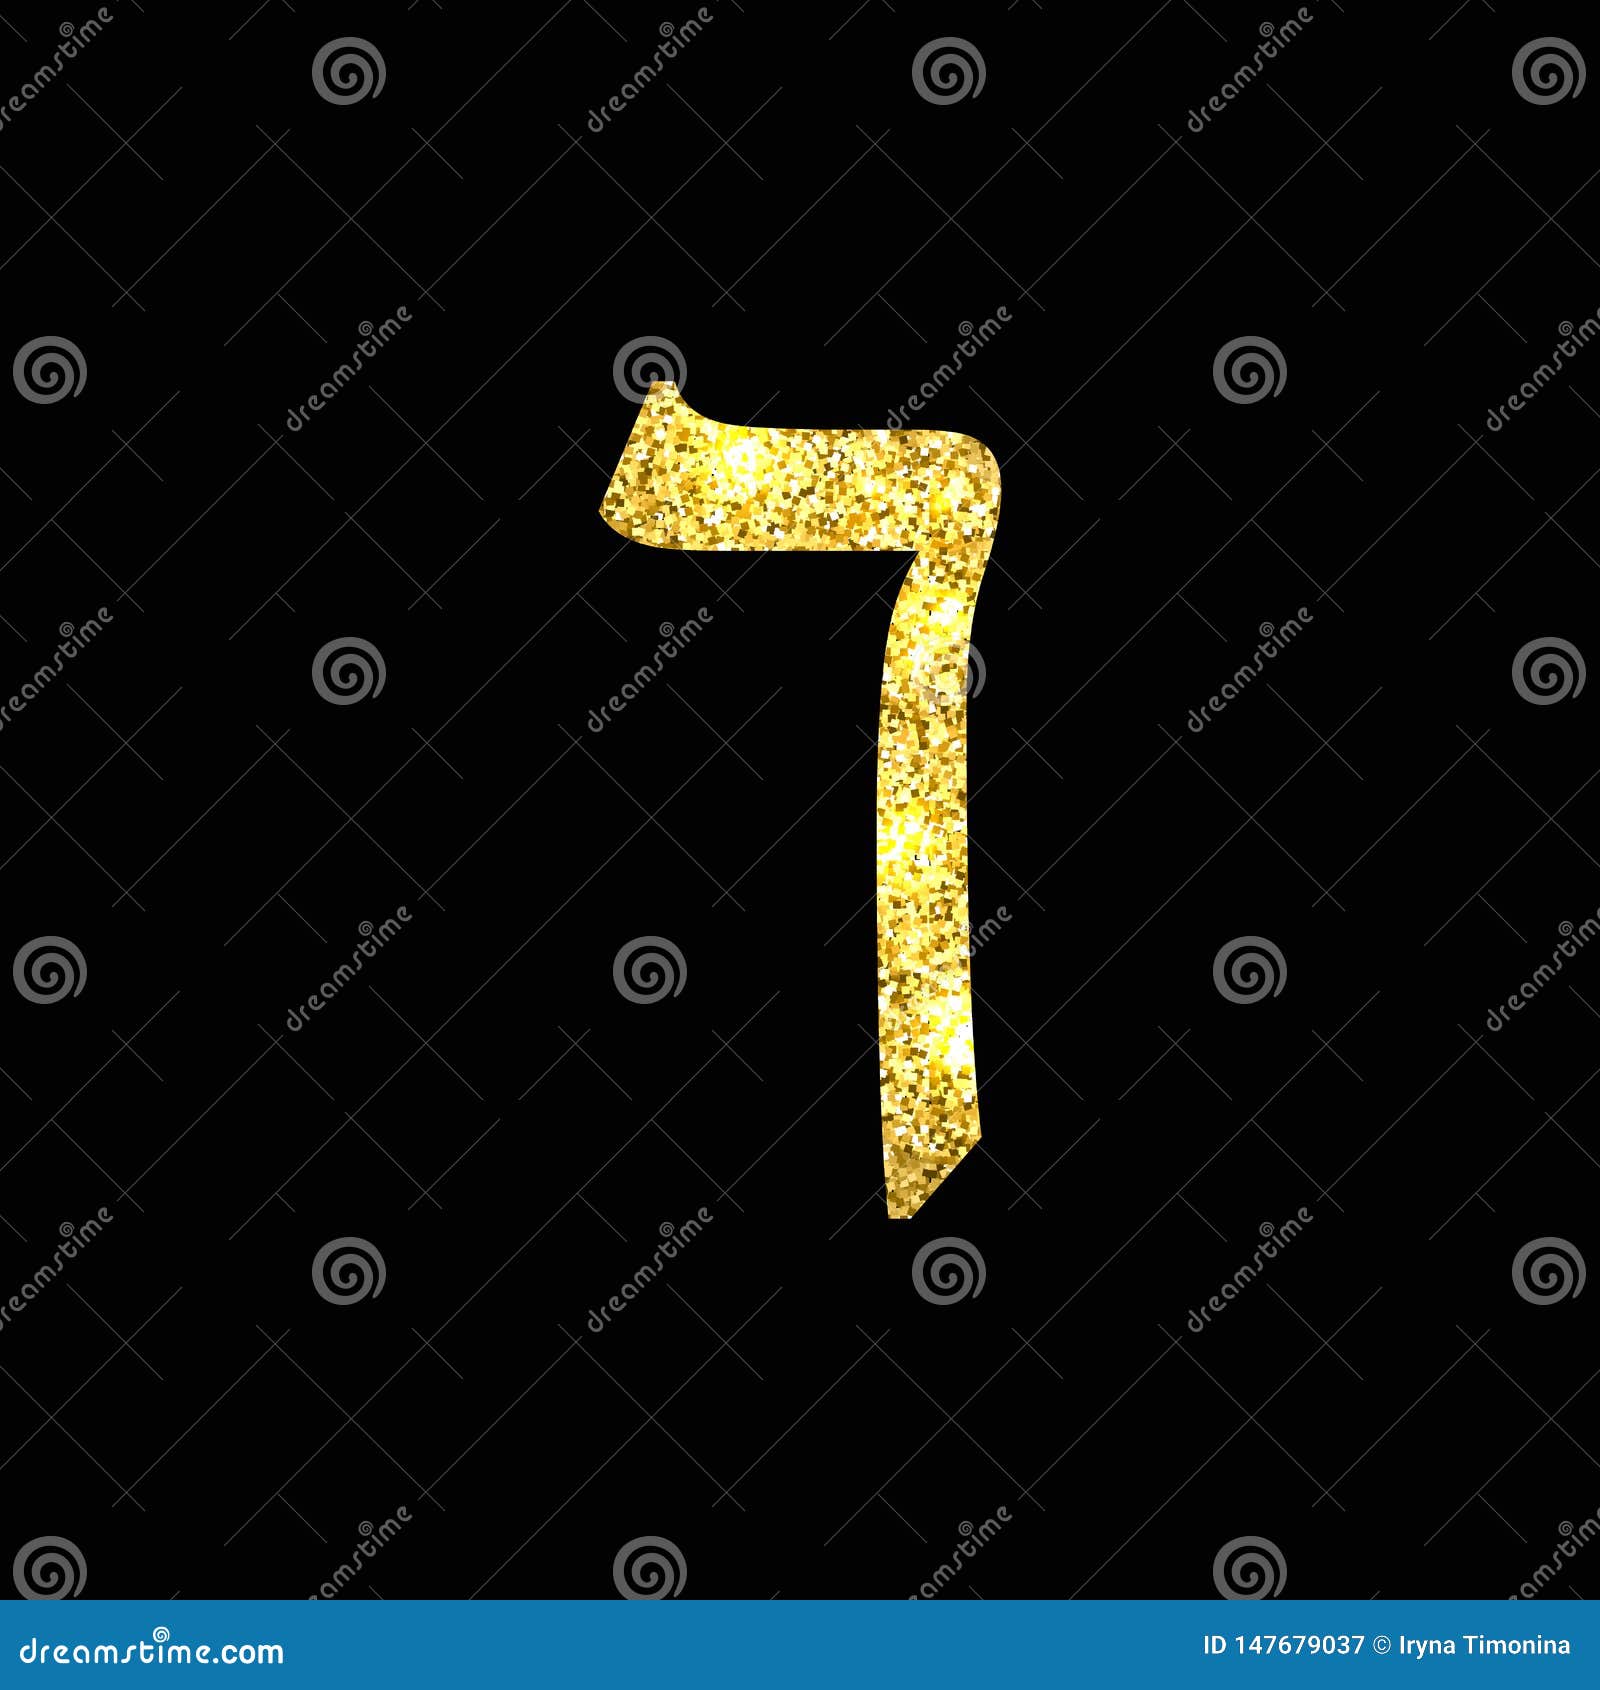 gold hebrew letter. the hebrew alphabet. golden kaf.